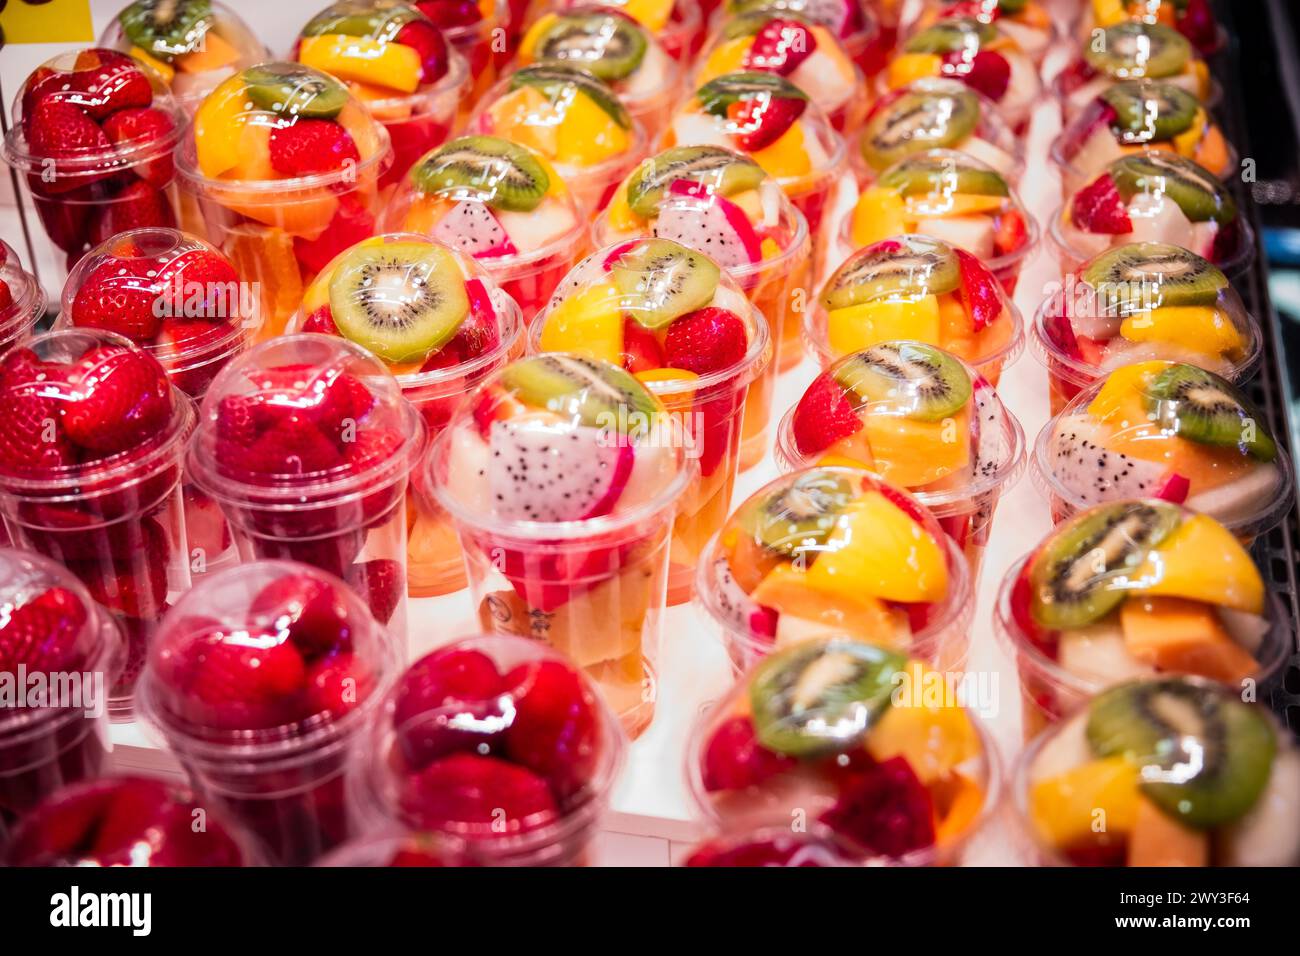 Salade de fruits dans un emballage plastique sur un marché à Barcelone Banque D'Images